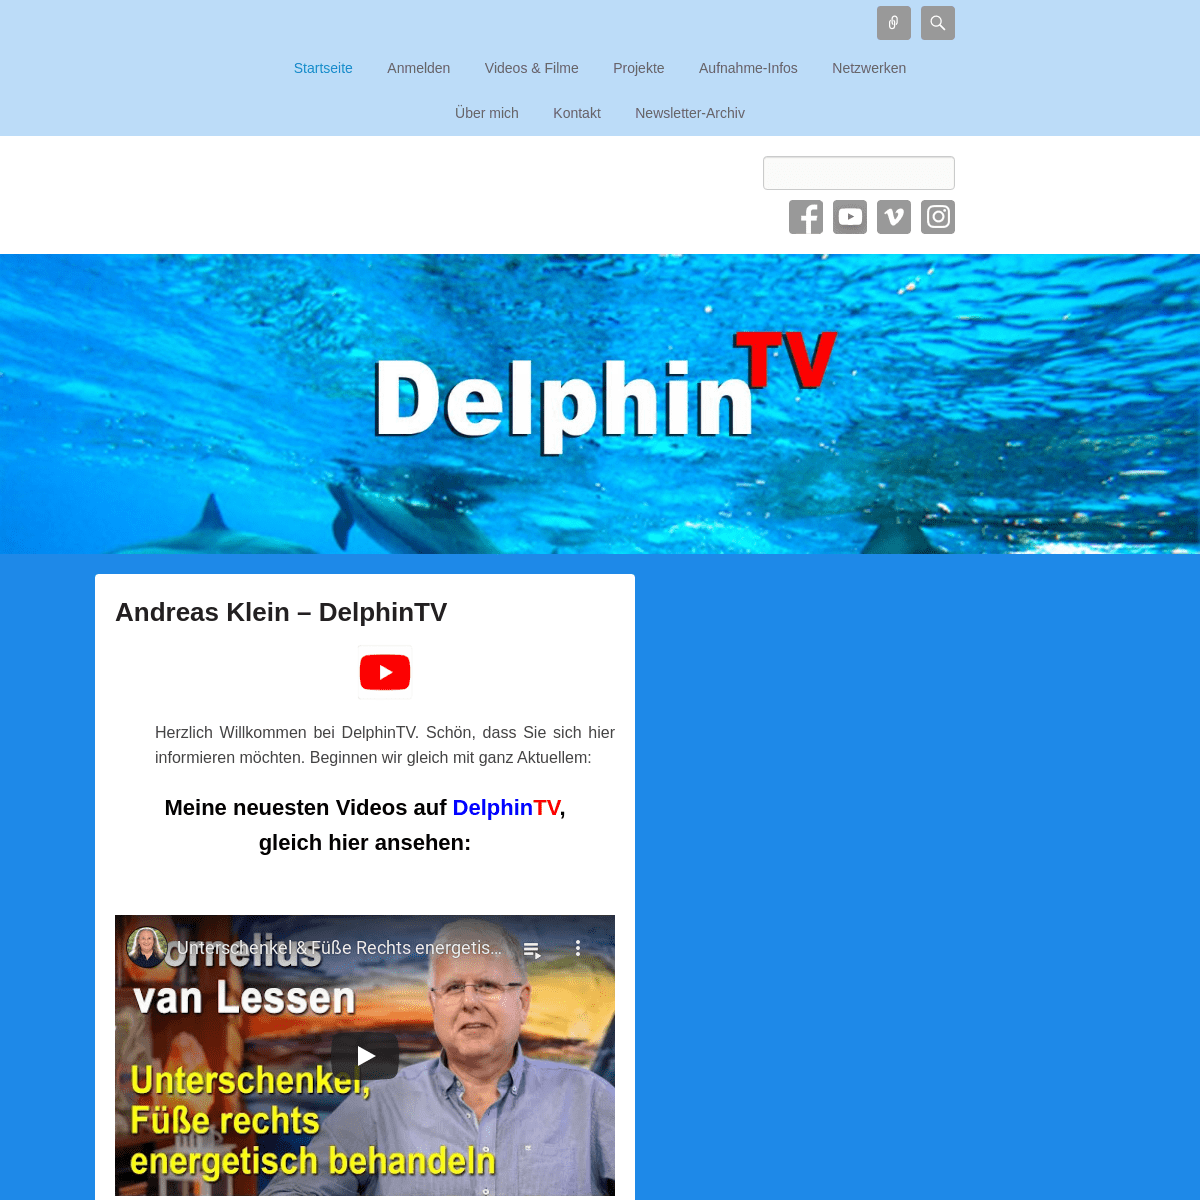 A complete backup of delphintv.de